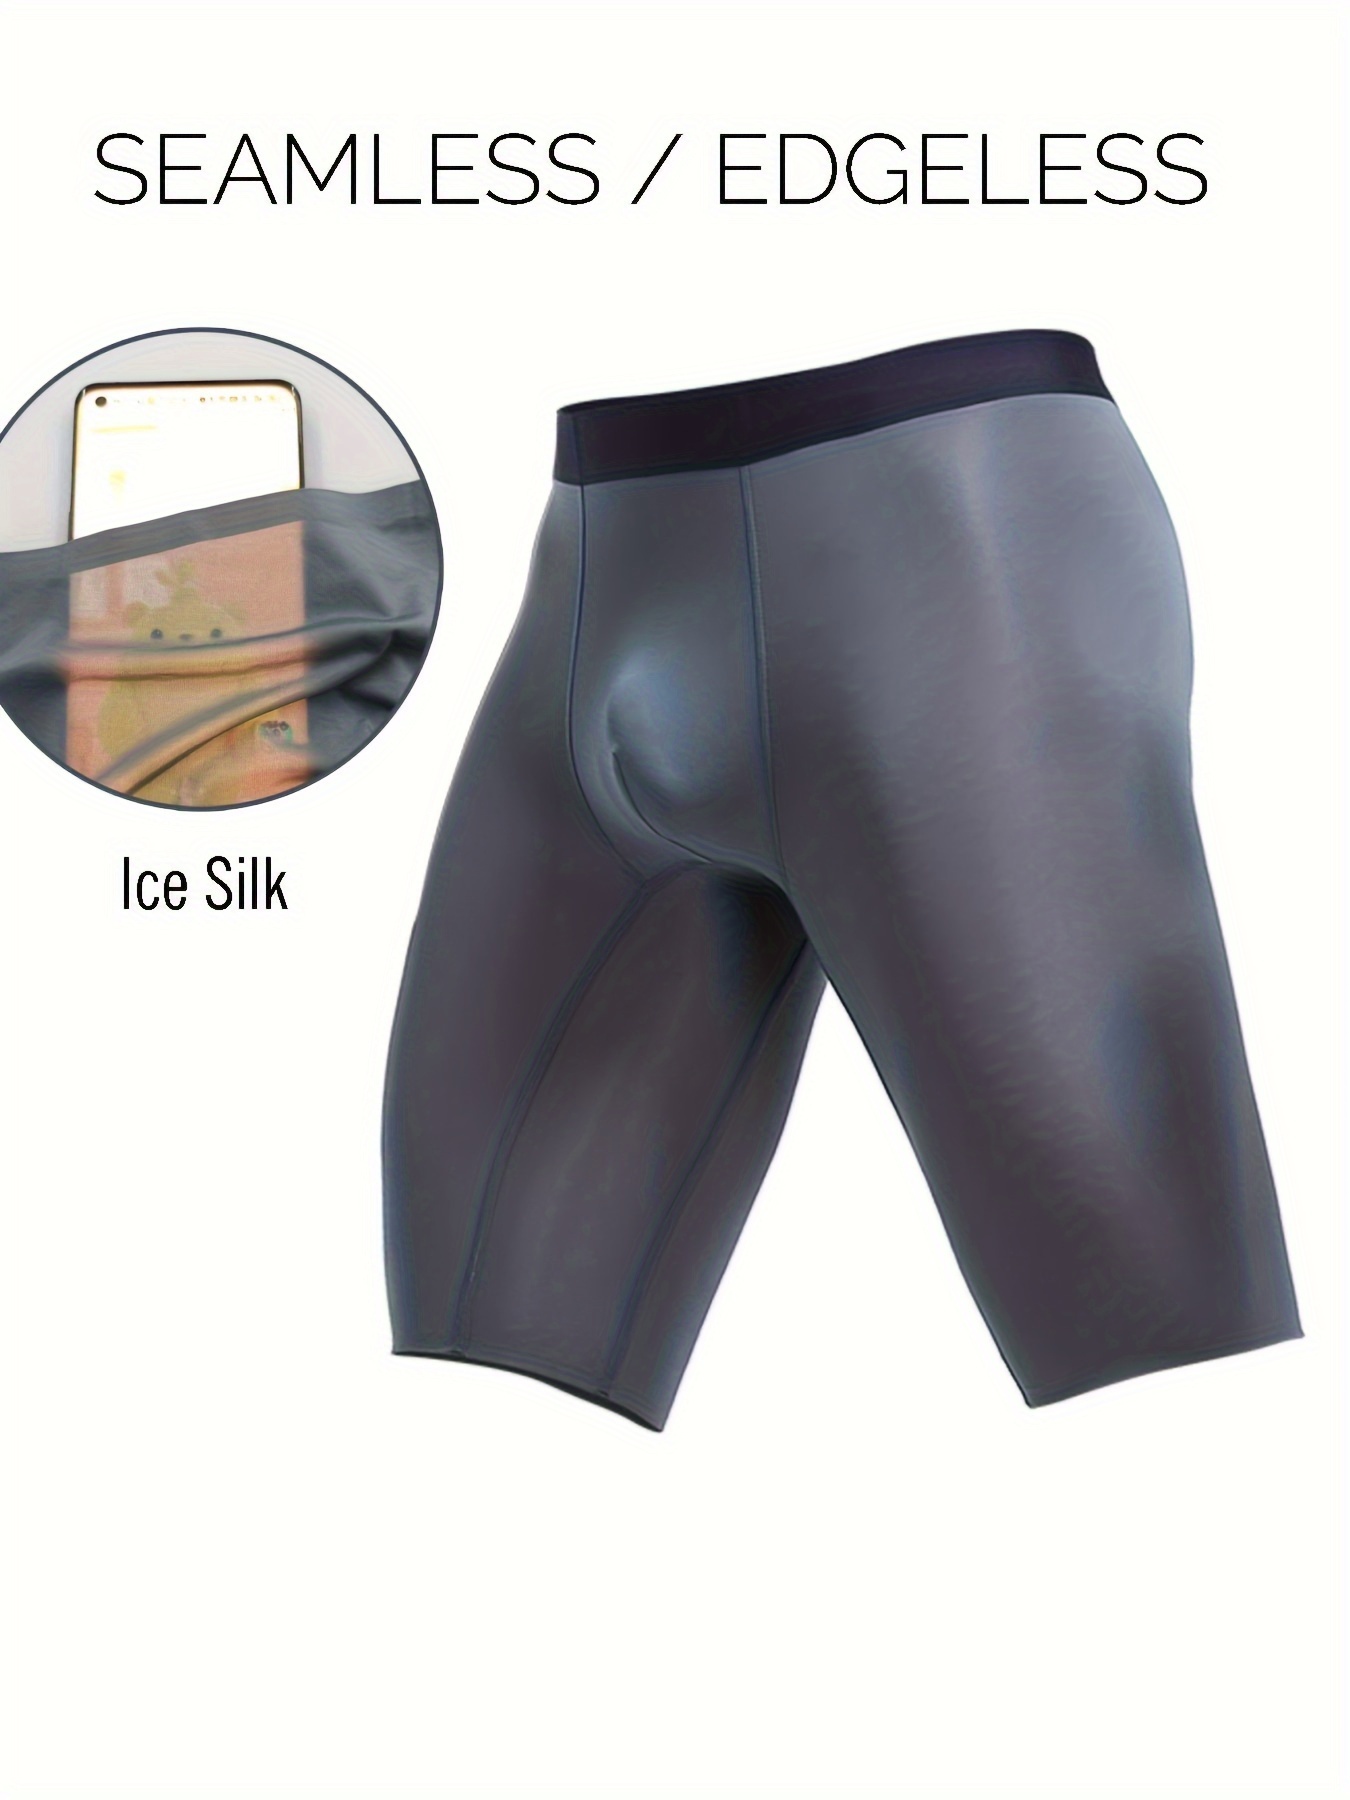 Asian Size Men's Underwear Anti dislocation Pouch Breathable - Temu Canada